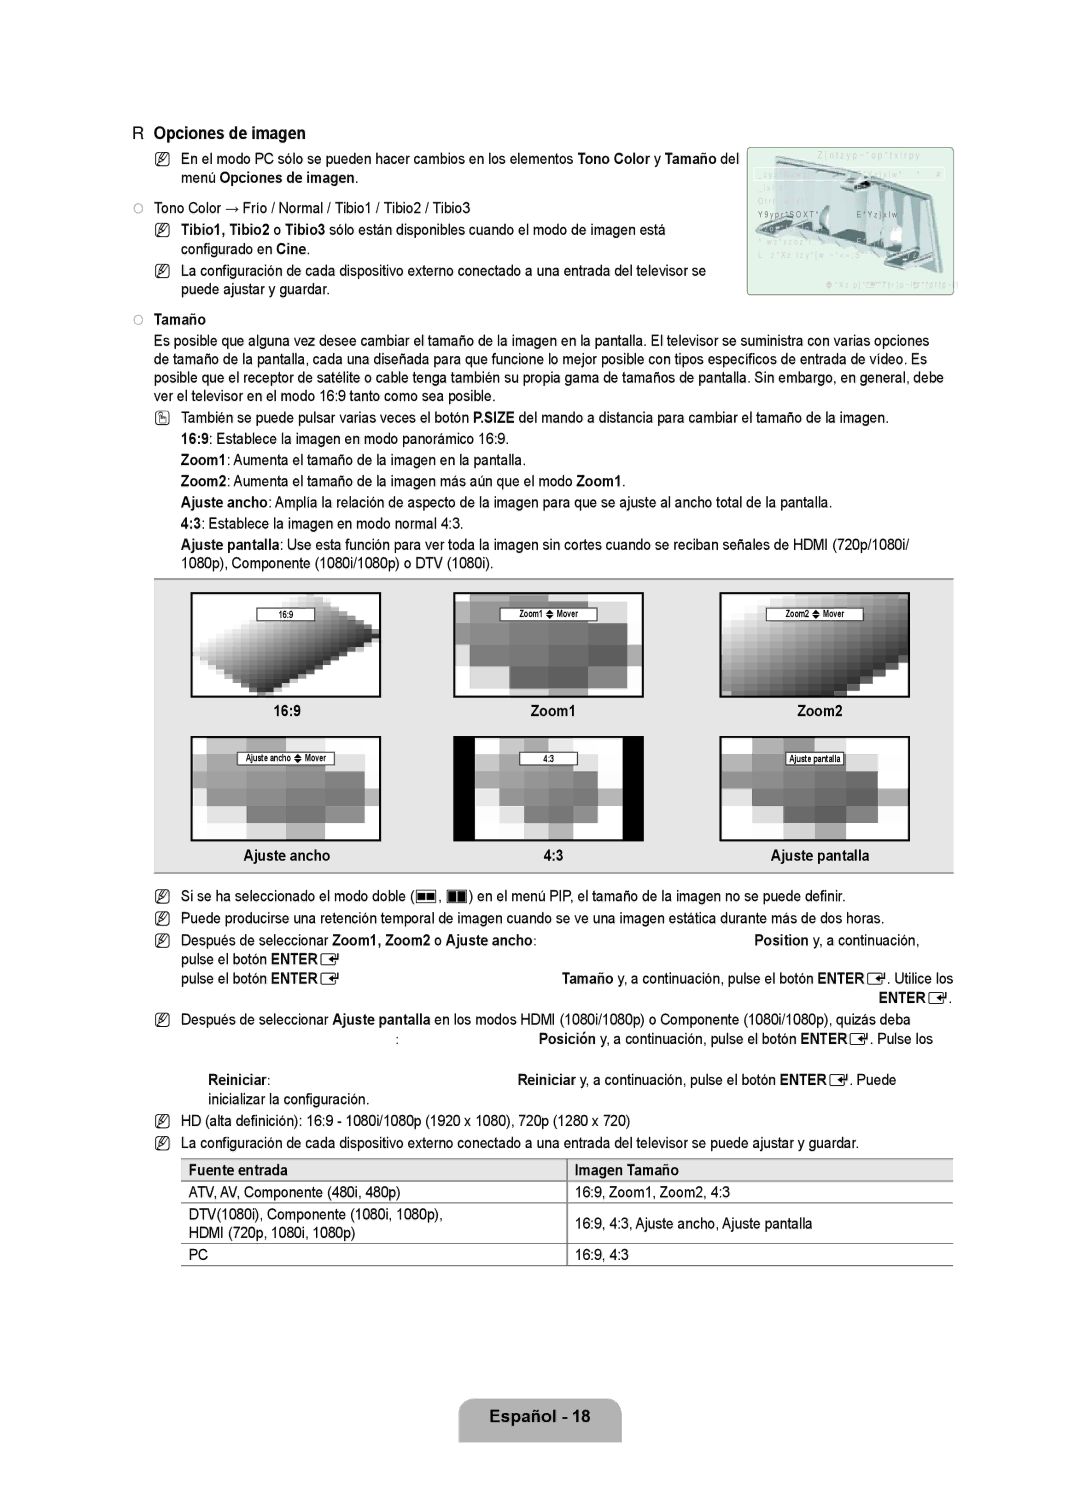 Samsung LN6B60 user manual Opciones de imagen, Tono Color → Frío / Normal / Tibio1 / Tibio2 / Tibio3, Tamaño 